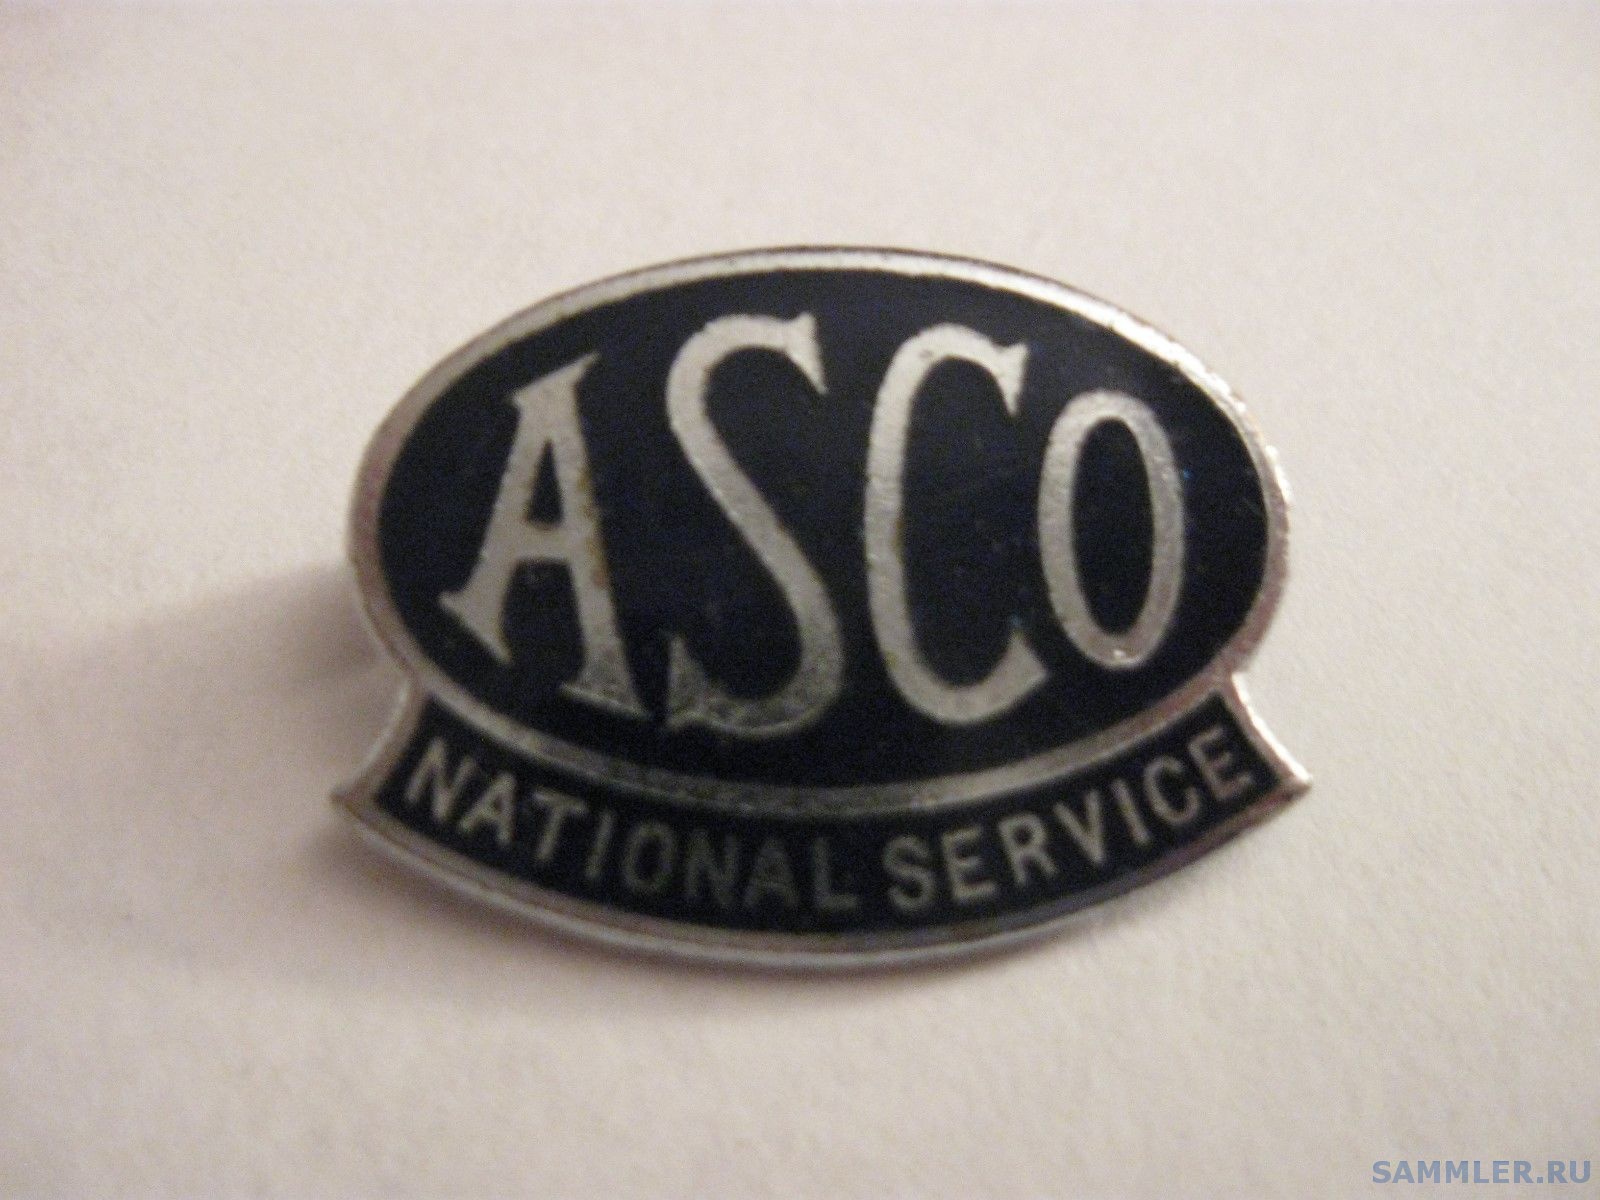 ASCO ON NATIONAL WAR SERVICE(пожаротехническое оборудование)..jpg